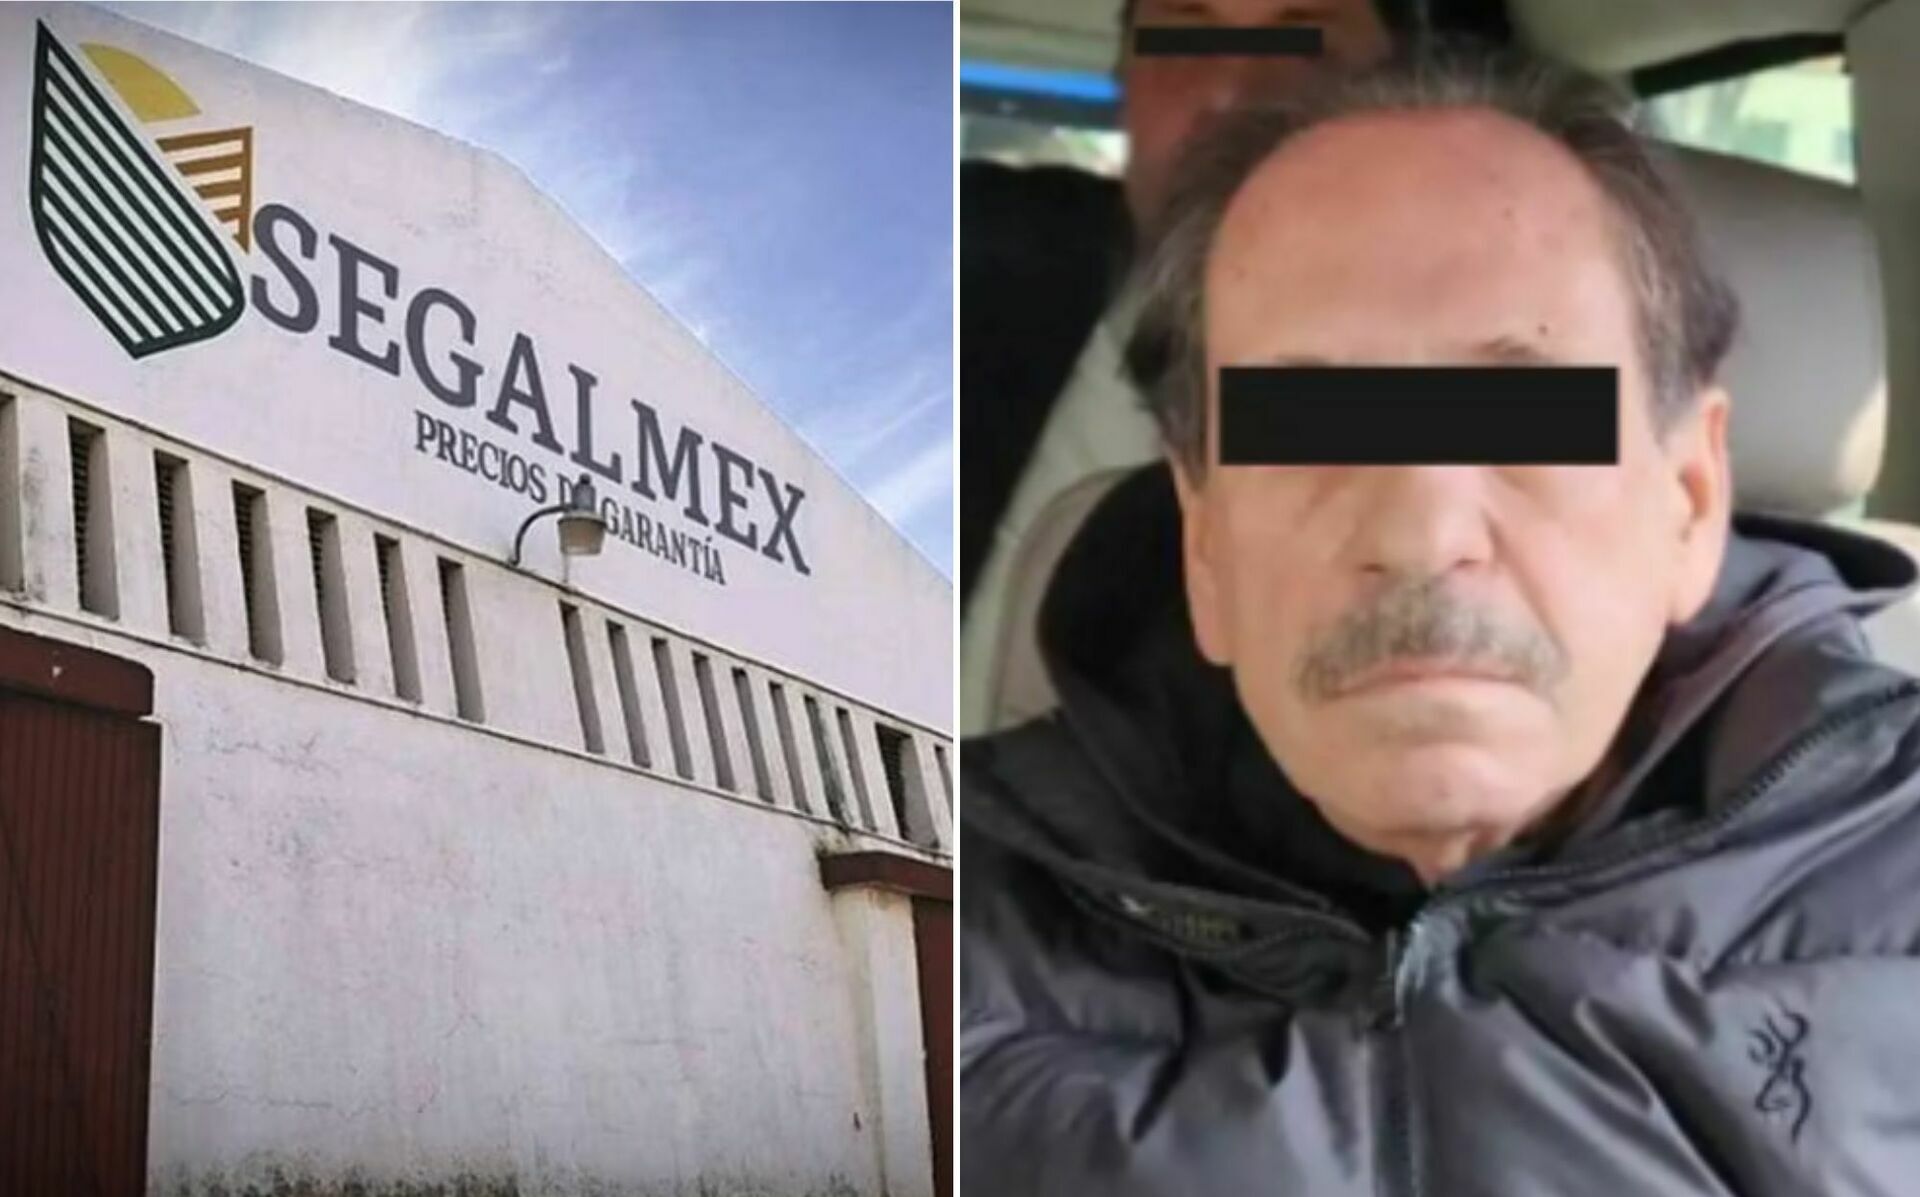 Tras ser detenido, el exdirector de Segalmex fue trasladado a las instalaciones de la Fiscalía Especializada en Materia de Delincuencia Organizada.